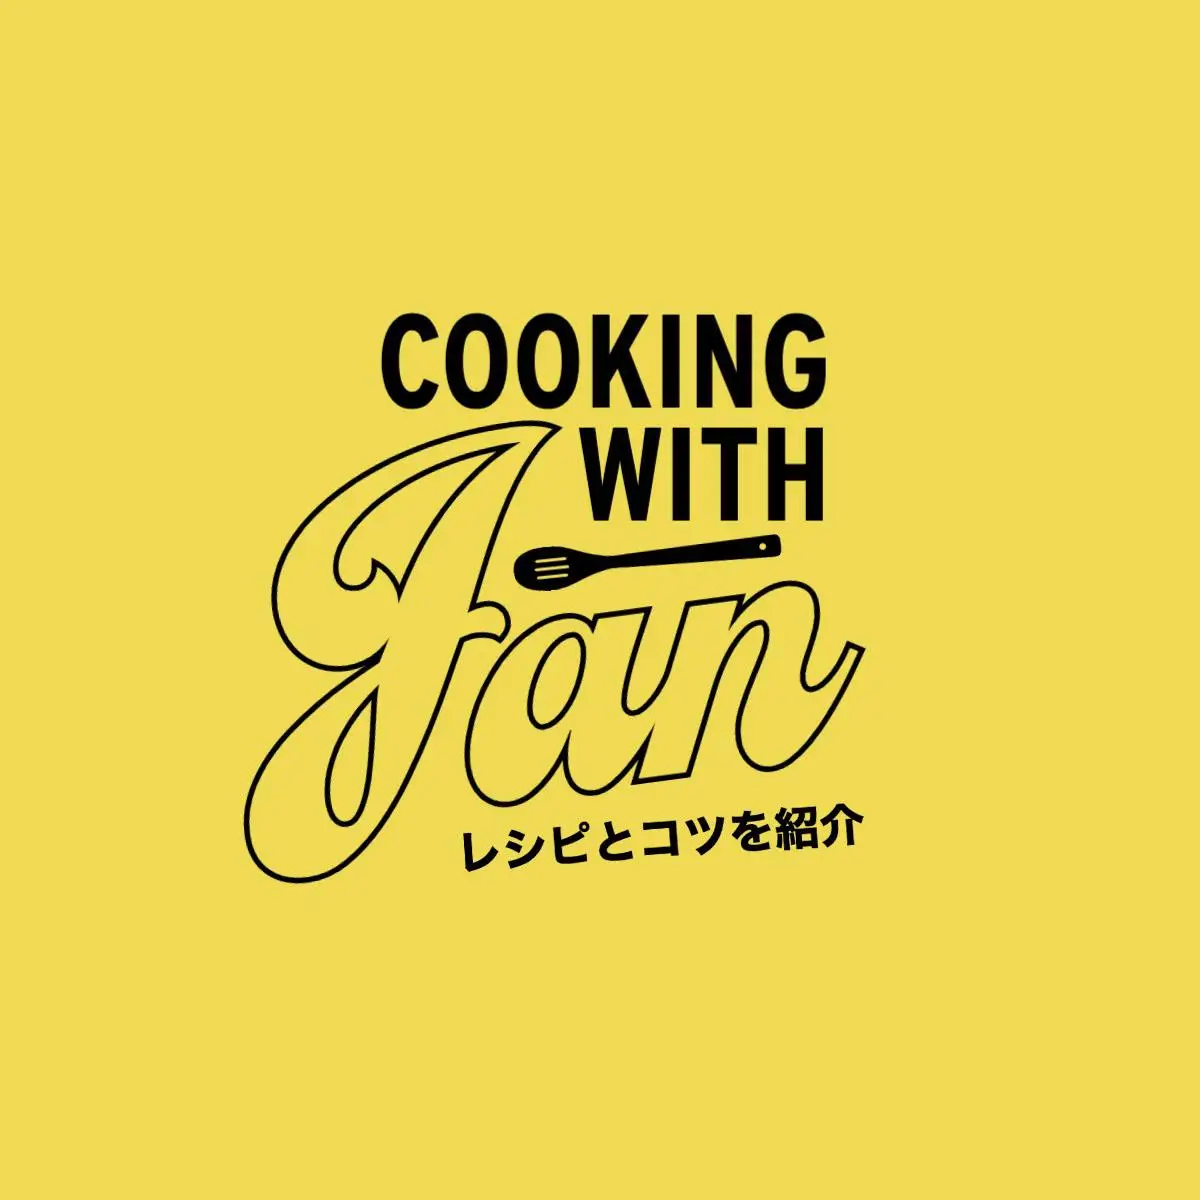 cooking school logo